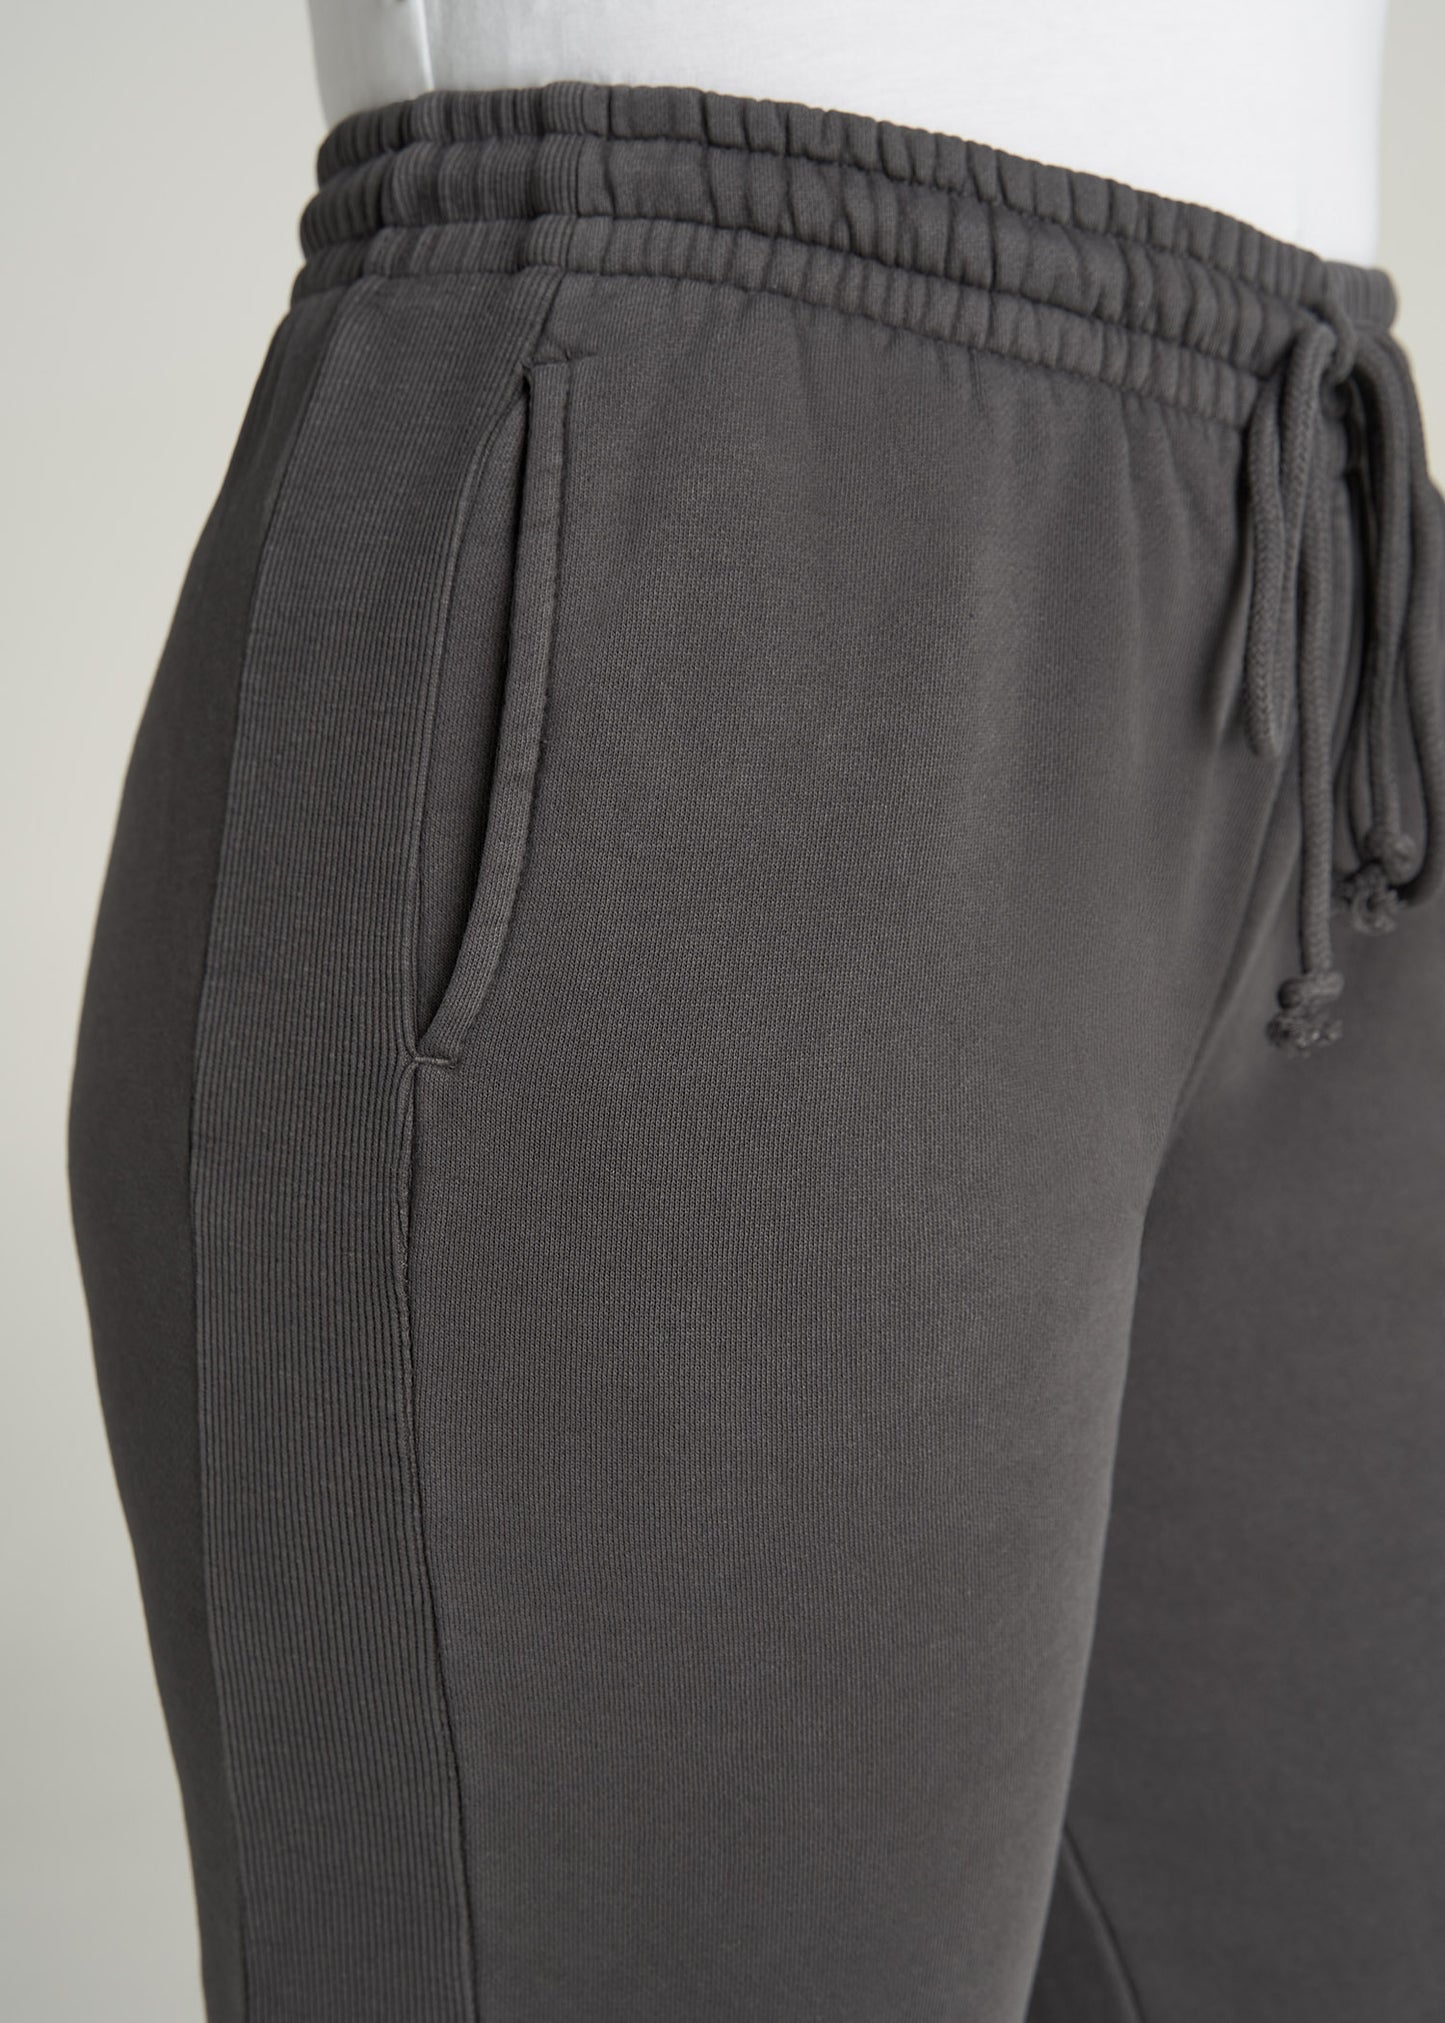    American-Tall-Women-GarmentDye-Sweatpants-Charcoal-detail